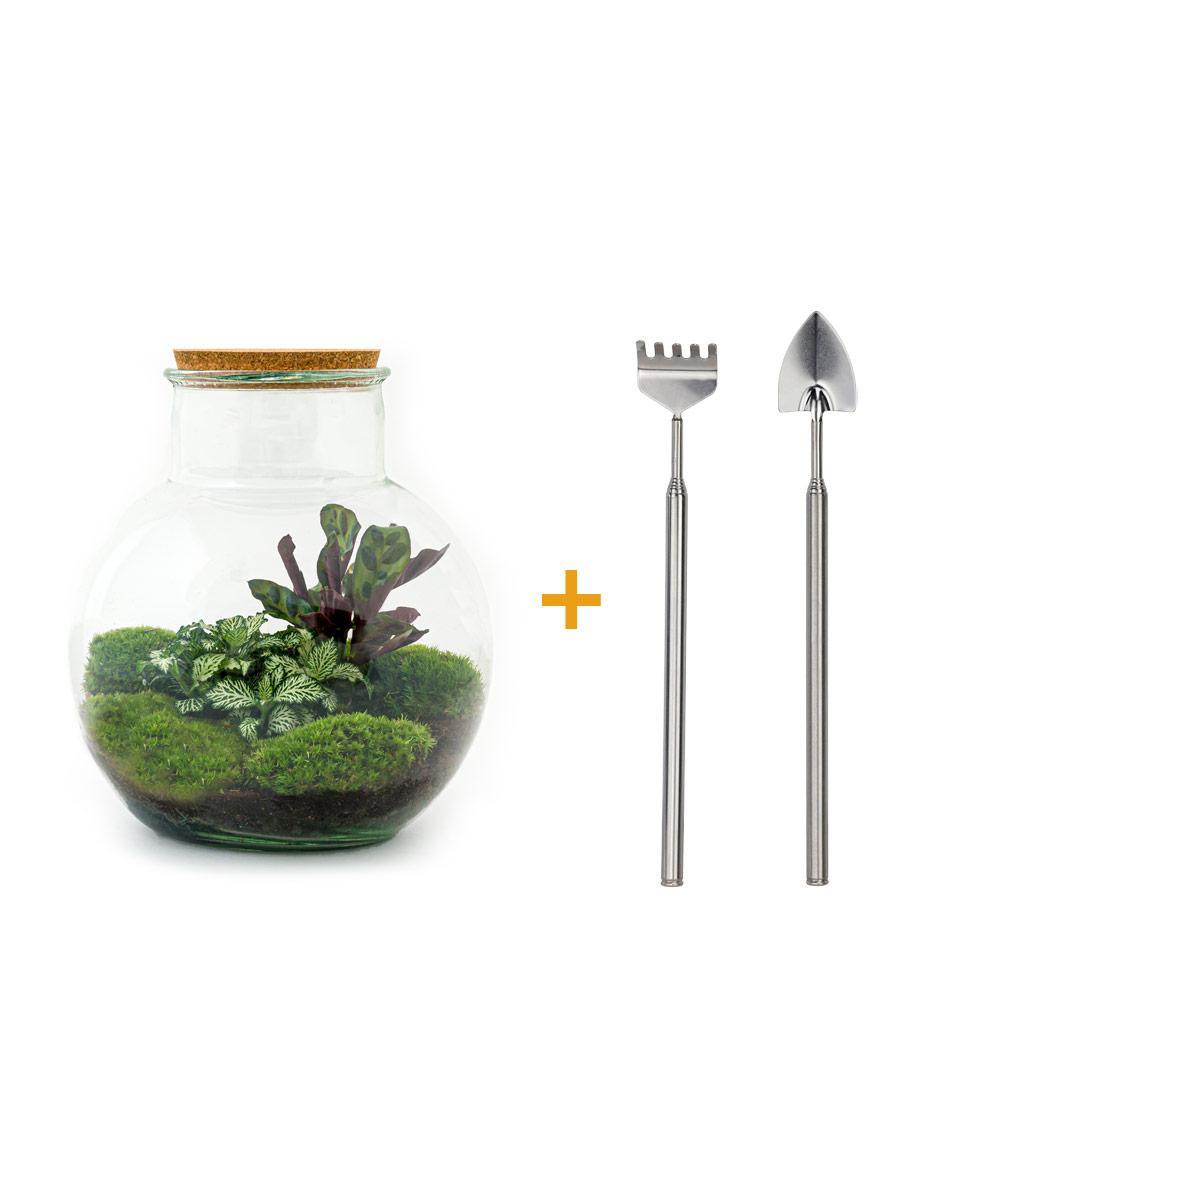 DIY terrarium - Teddy - ↕ 26,5 cm DIY terrarium - Teddy - ↕ 26,5 cm - Rake + Shovel